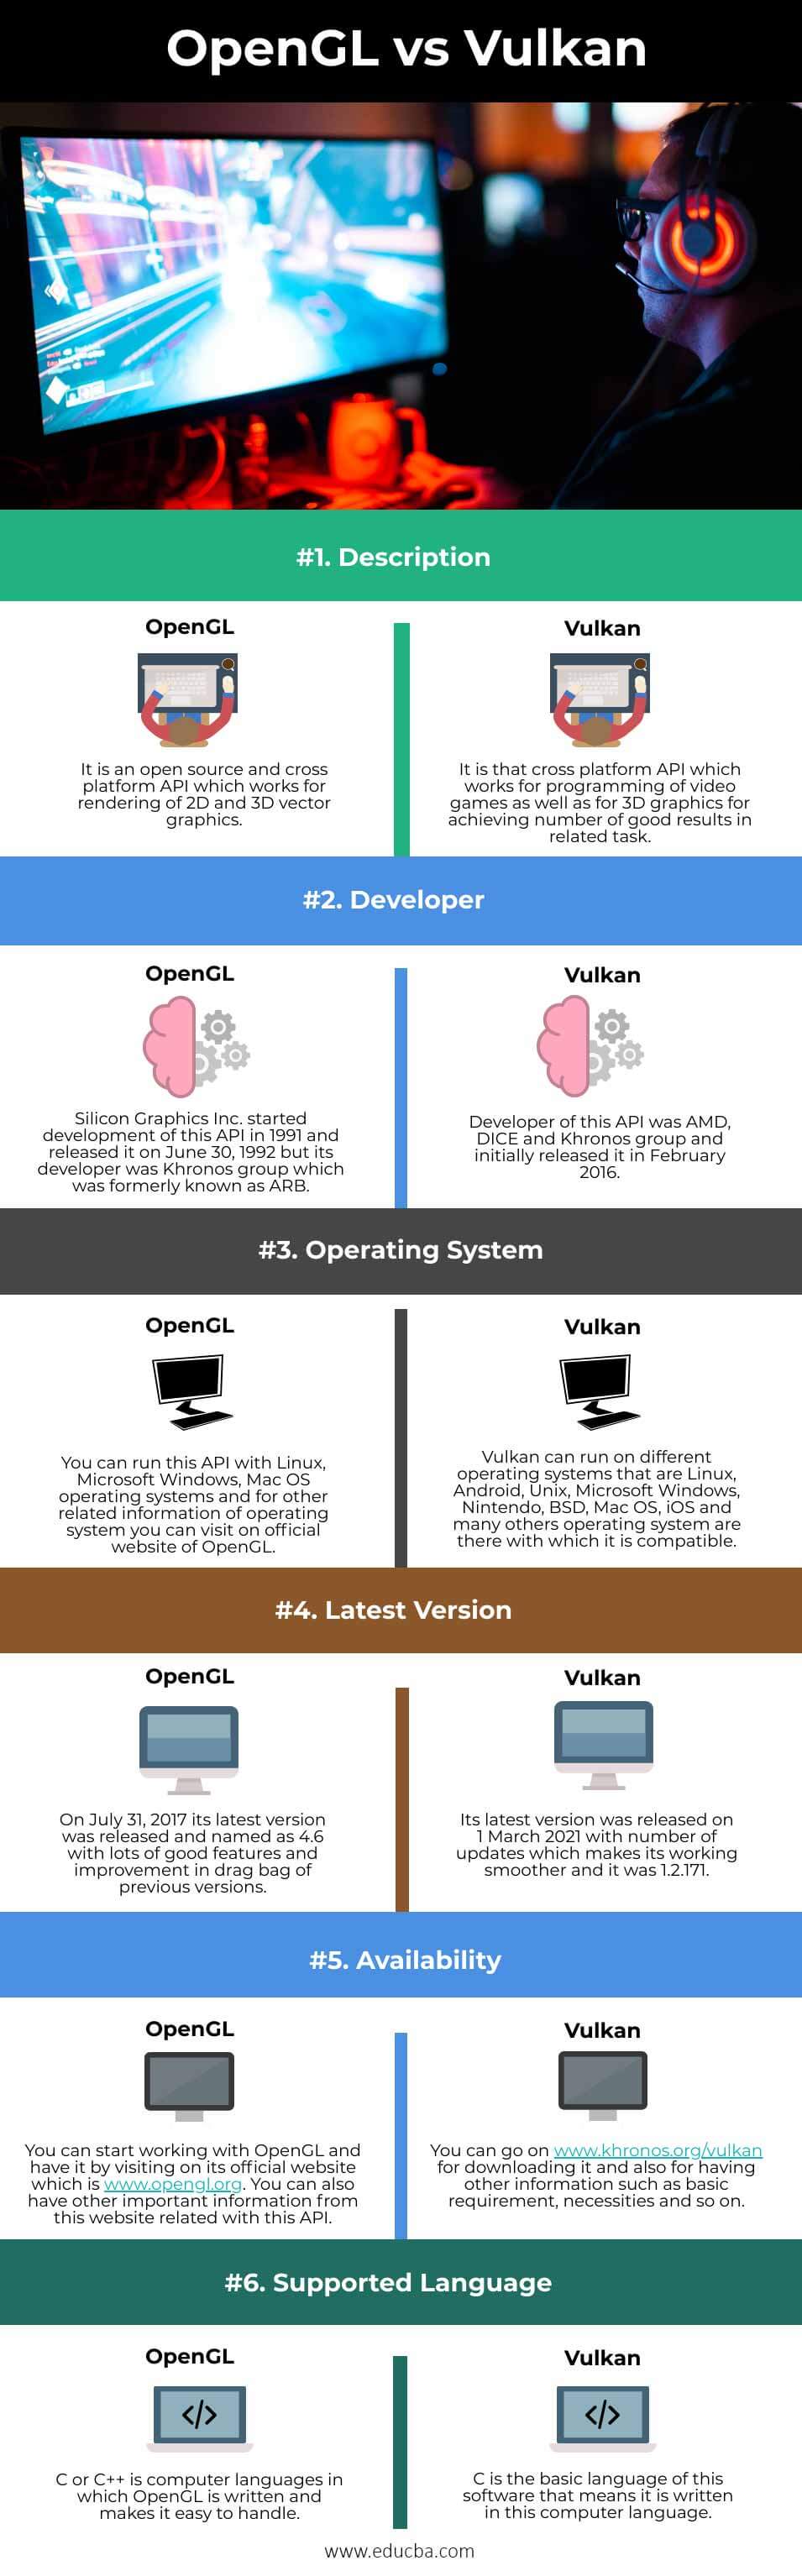 OpenGL-vs-Vulkan-info